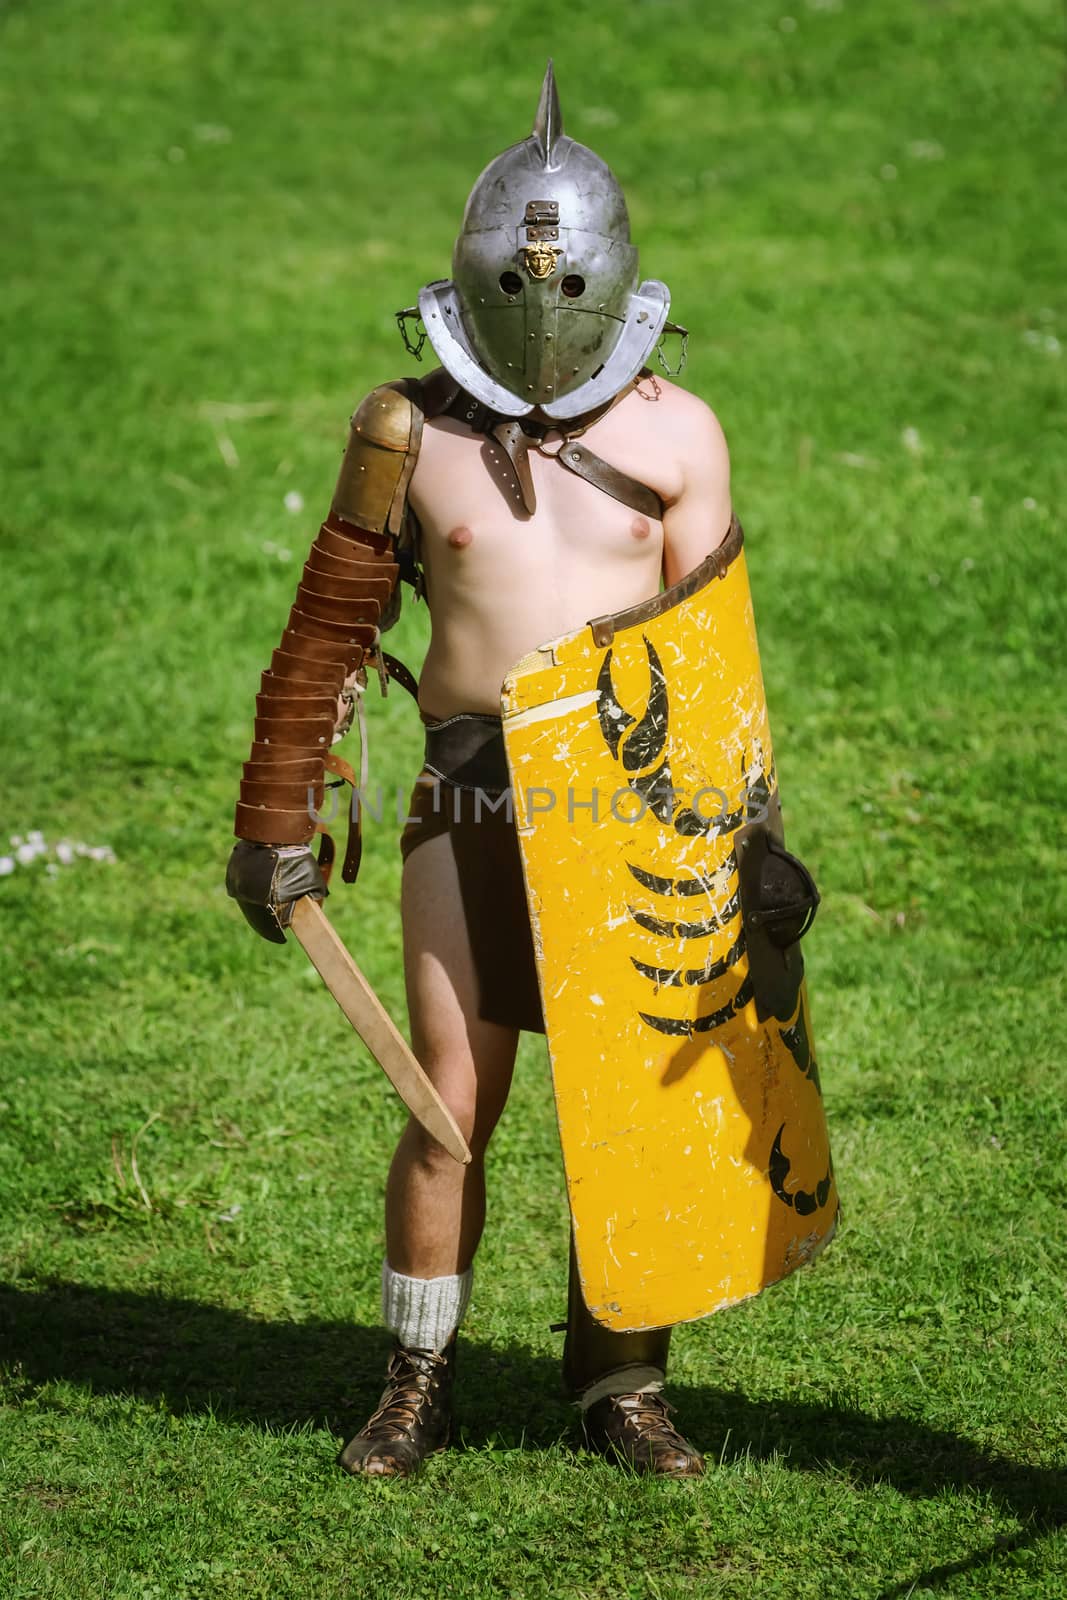 Alba Iulia, Romania - May 04, 2019: Gladiator of the Roman Empire Posing During the Festival Roman Apulum "Revolta".